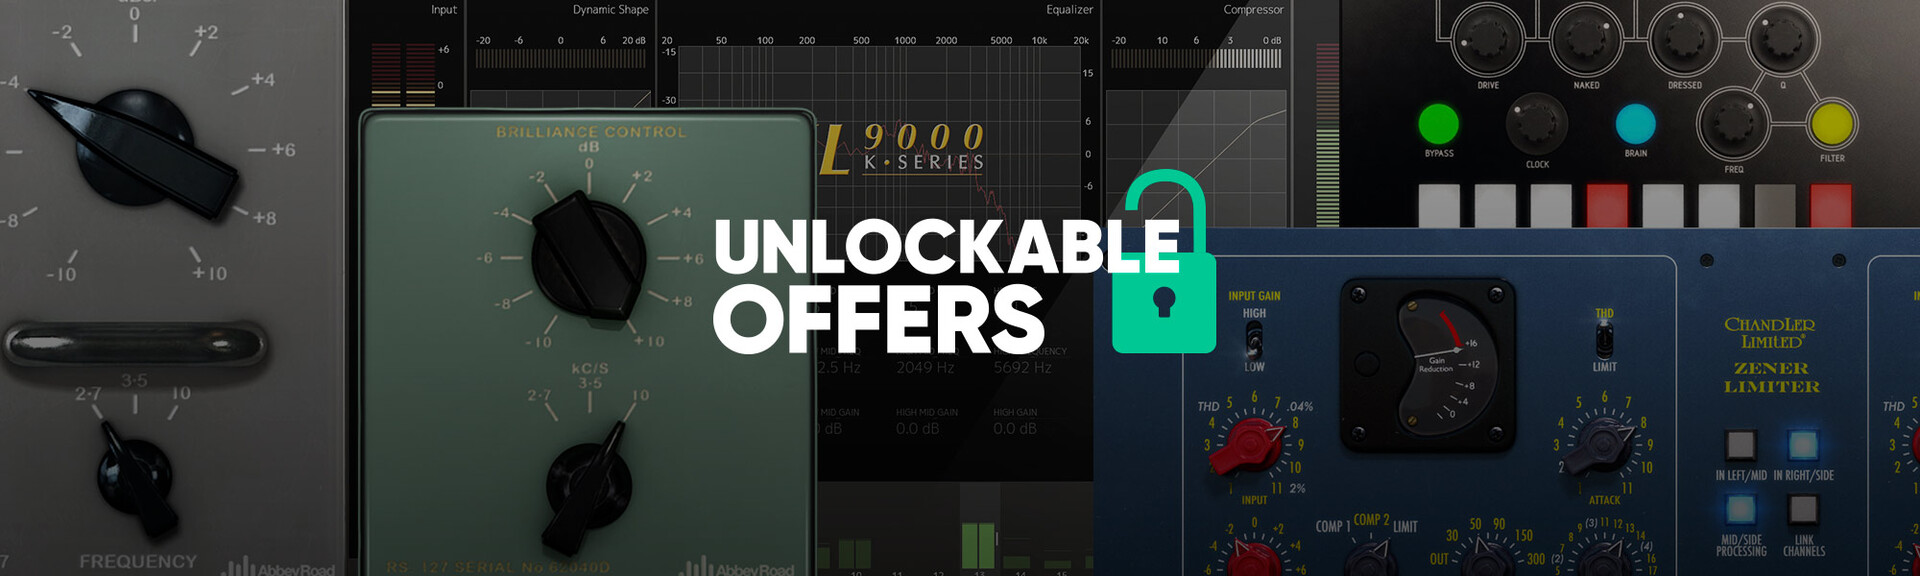 header-unlockable-offers-202009.jpeg